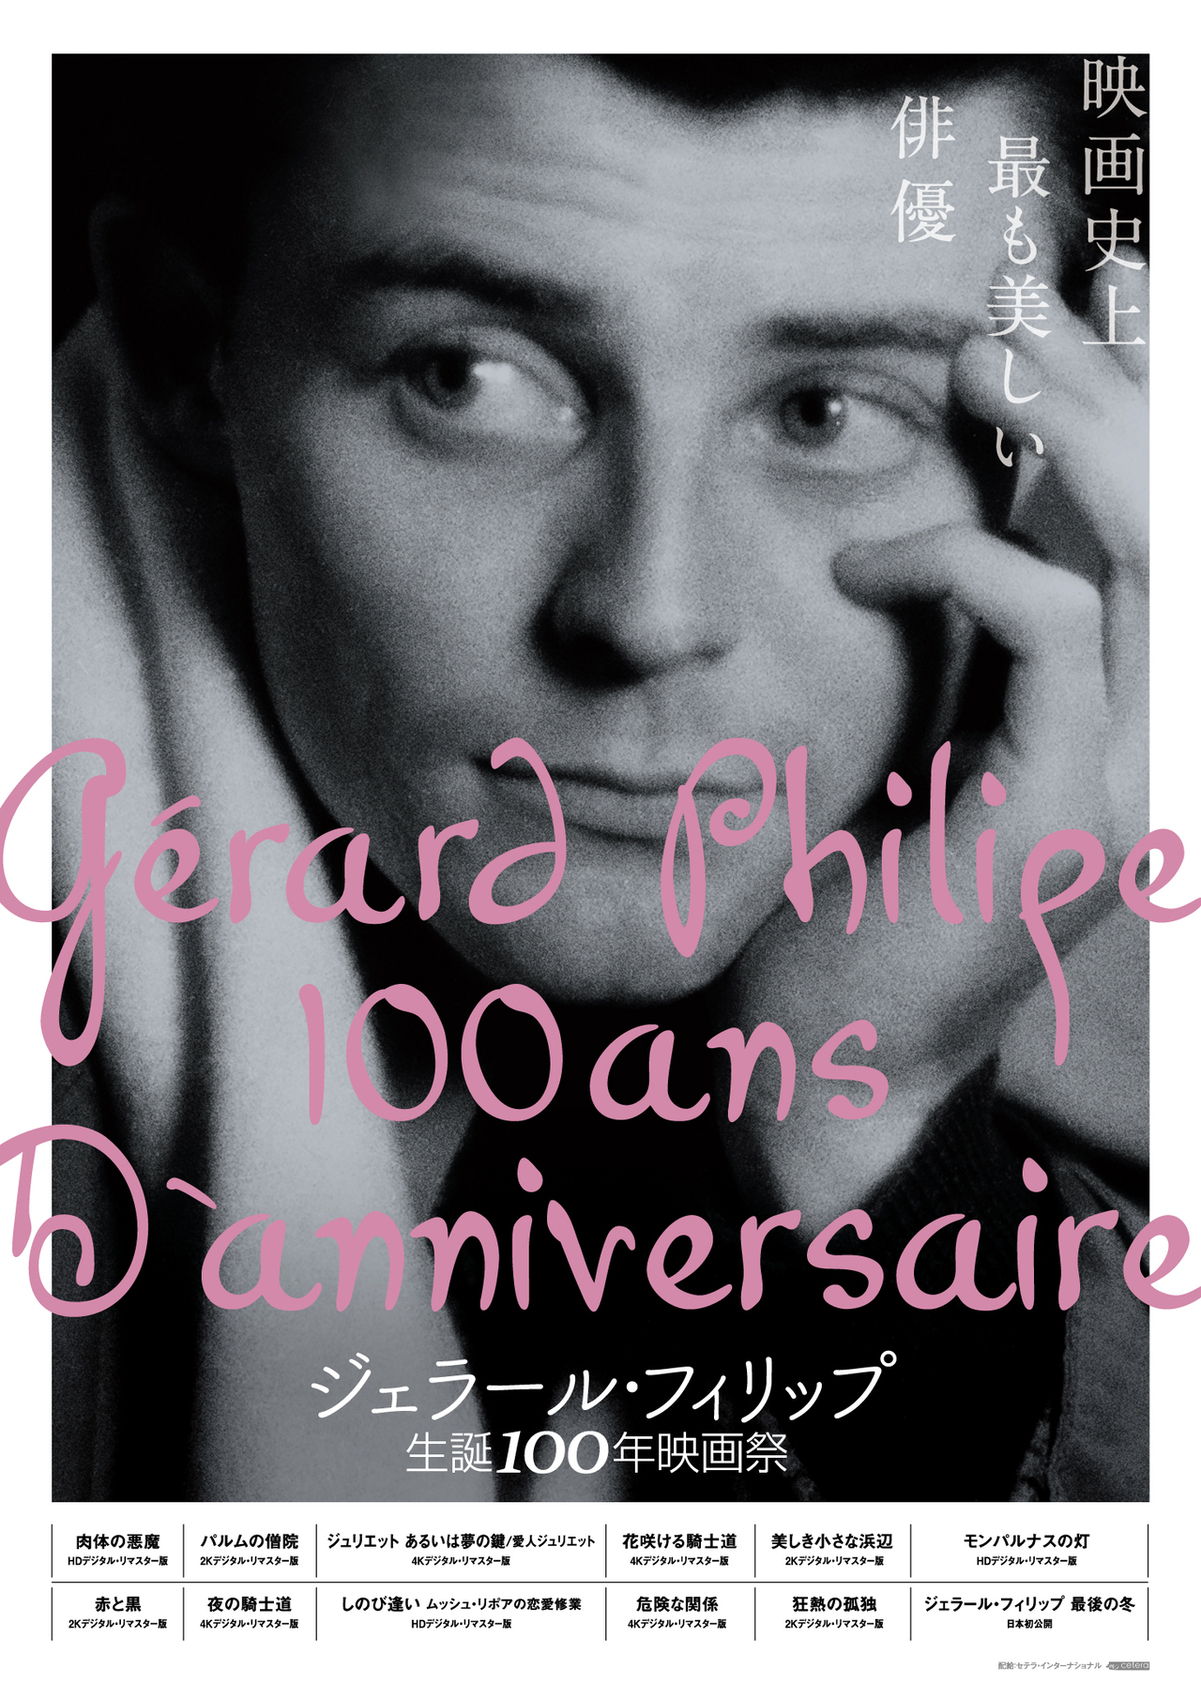 「ジェラール・フィリップ生誕100年映画祭」ラインナップ発表